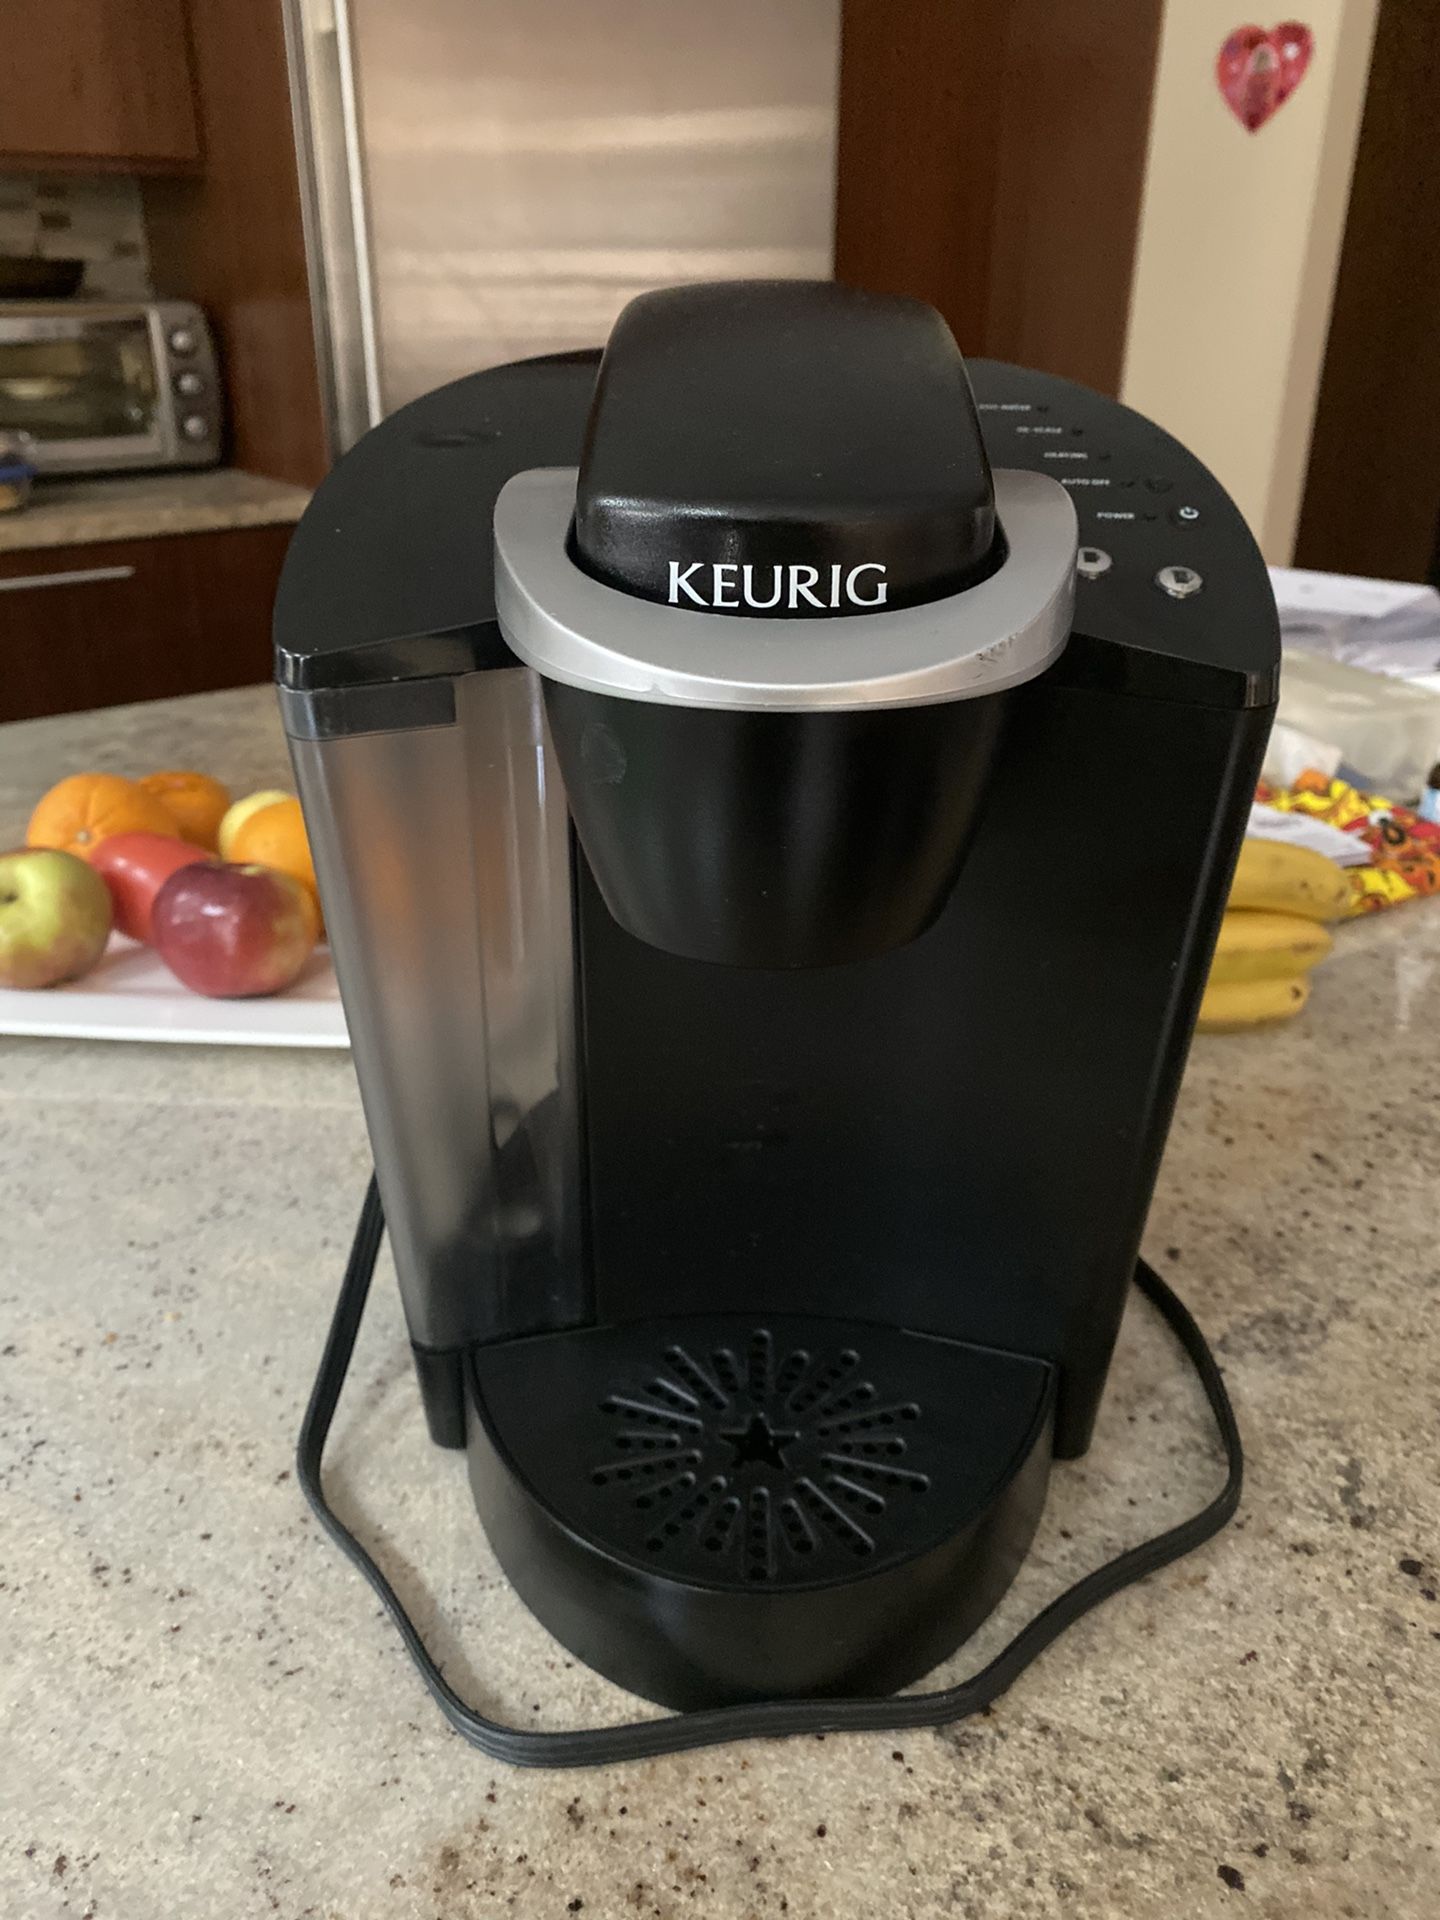 Keuriq Elite single serve coffee maker